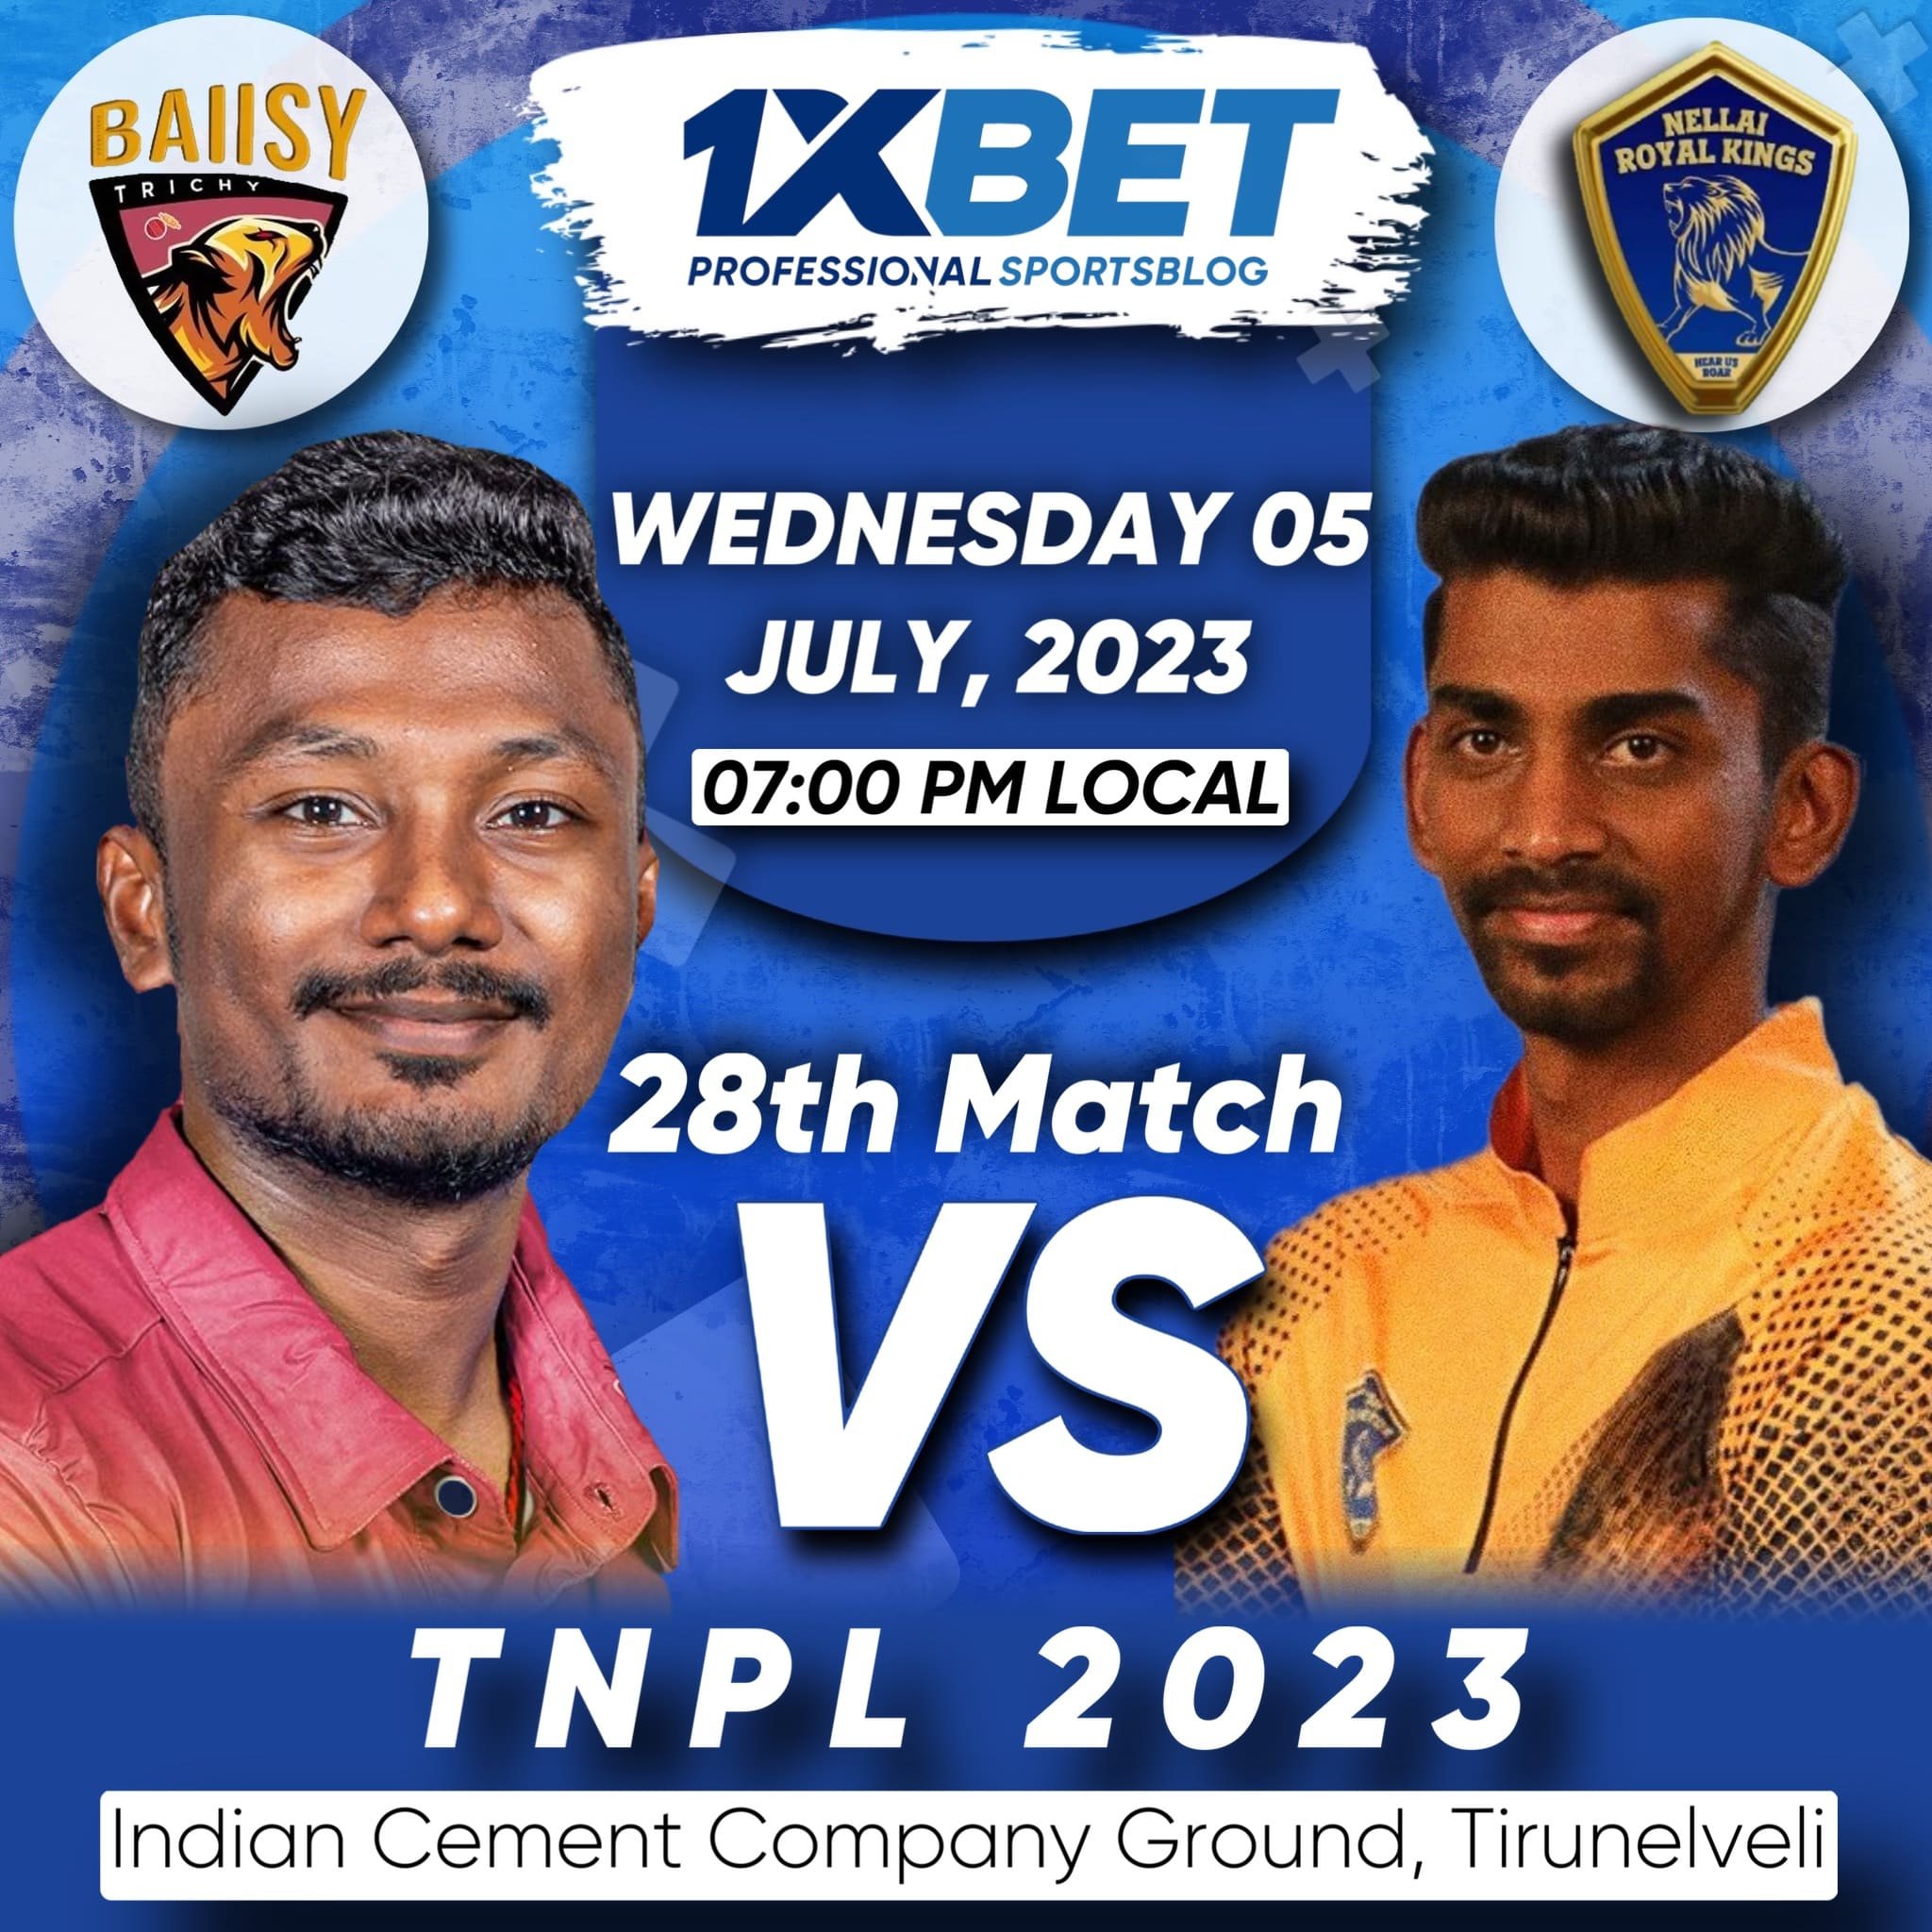 Ba11sy Trichy vs Nellai Royal Kings, TNPL 2023, 28th Match Analysis